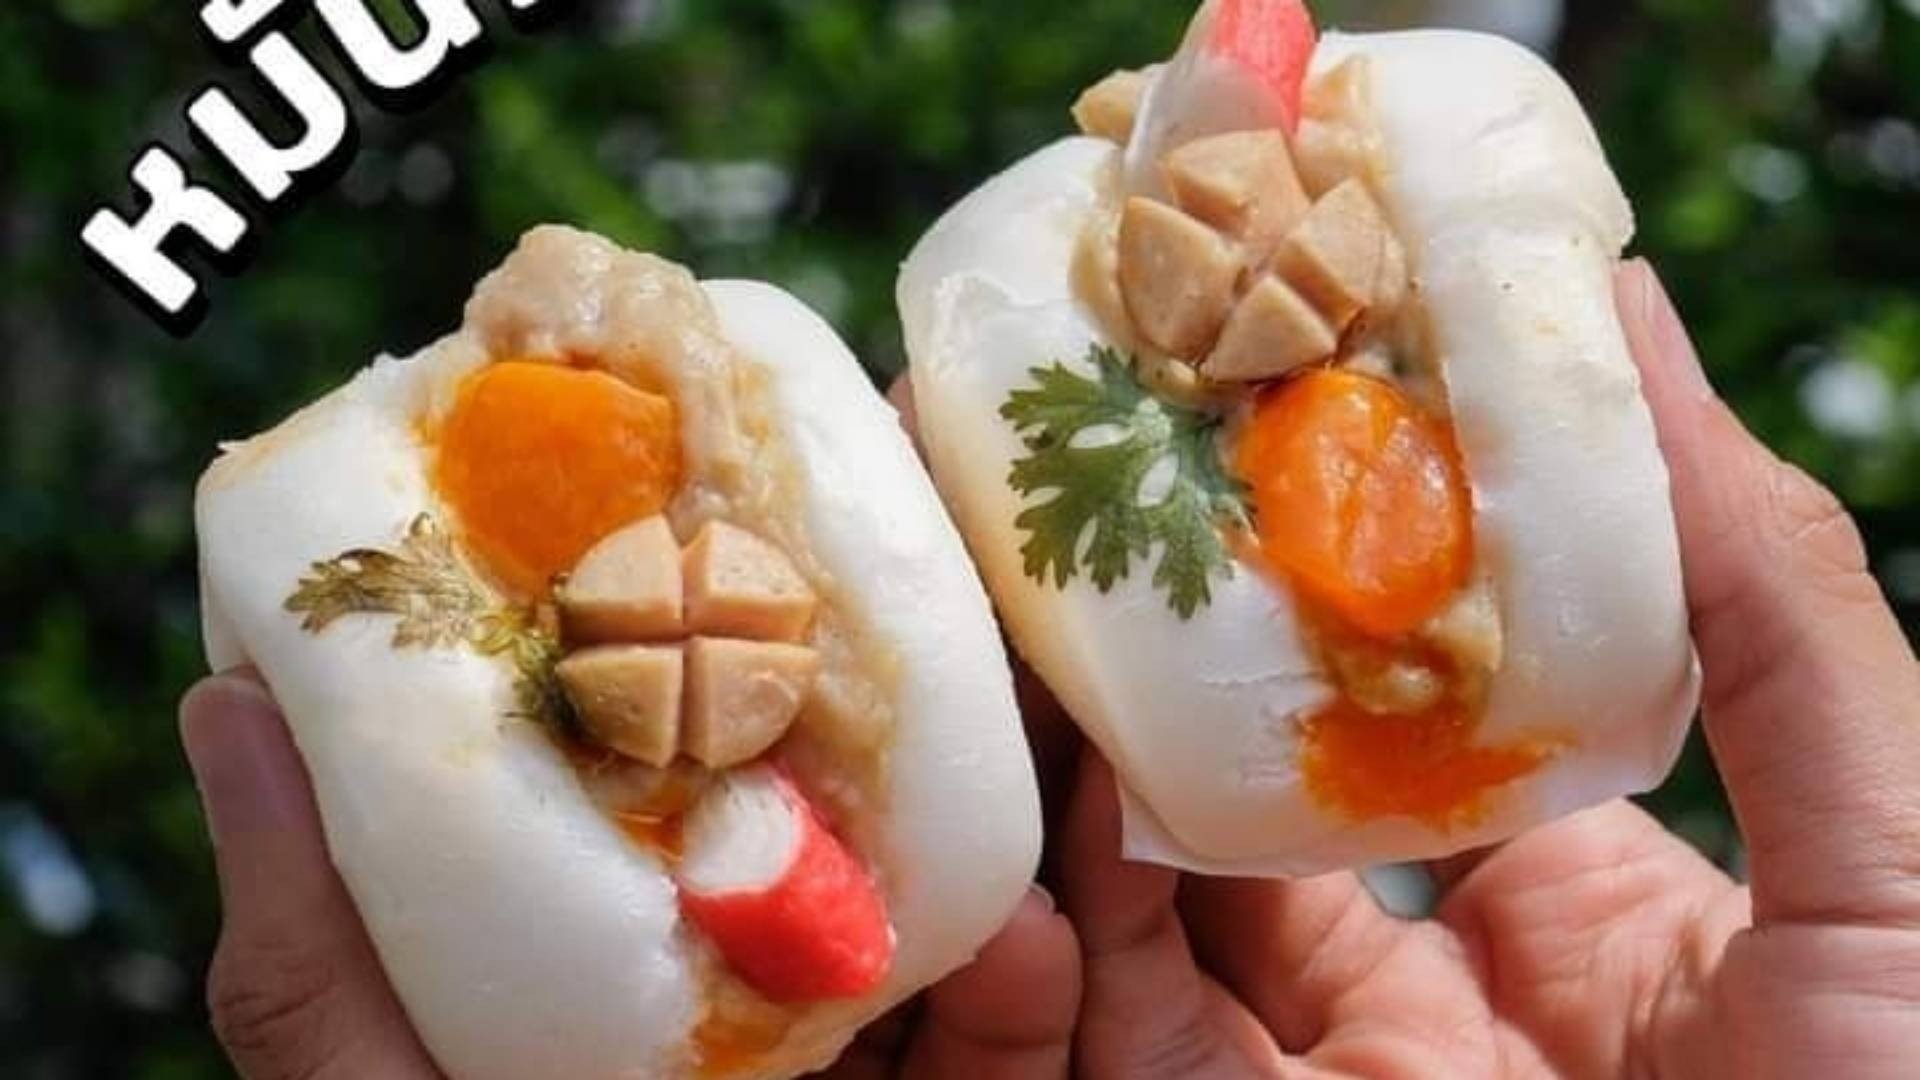 นุ๊กเปานุ้มนุ่ม ขนมจีบ ซาลาเปา ( อรพรรณ เมืองทองธานี ) - สั่งอาหารเดลิเวอรี  | Wongnai x LINE MAN